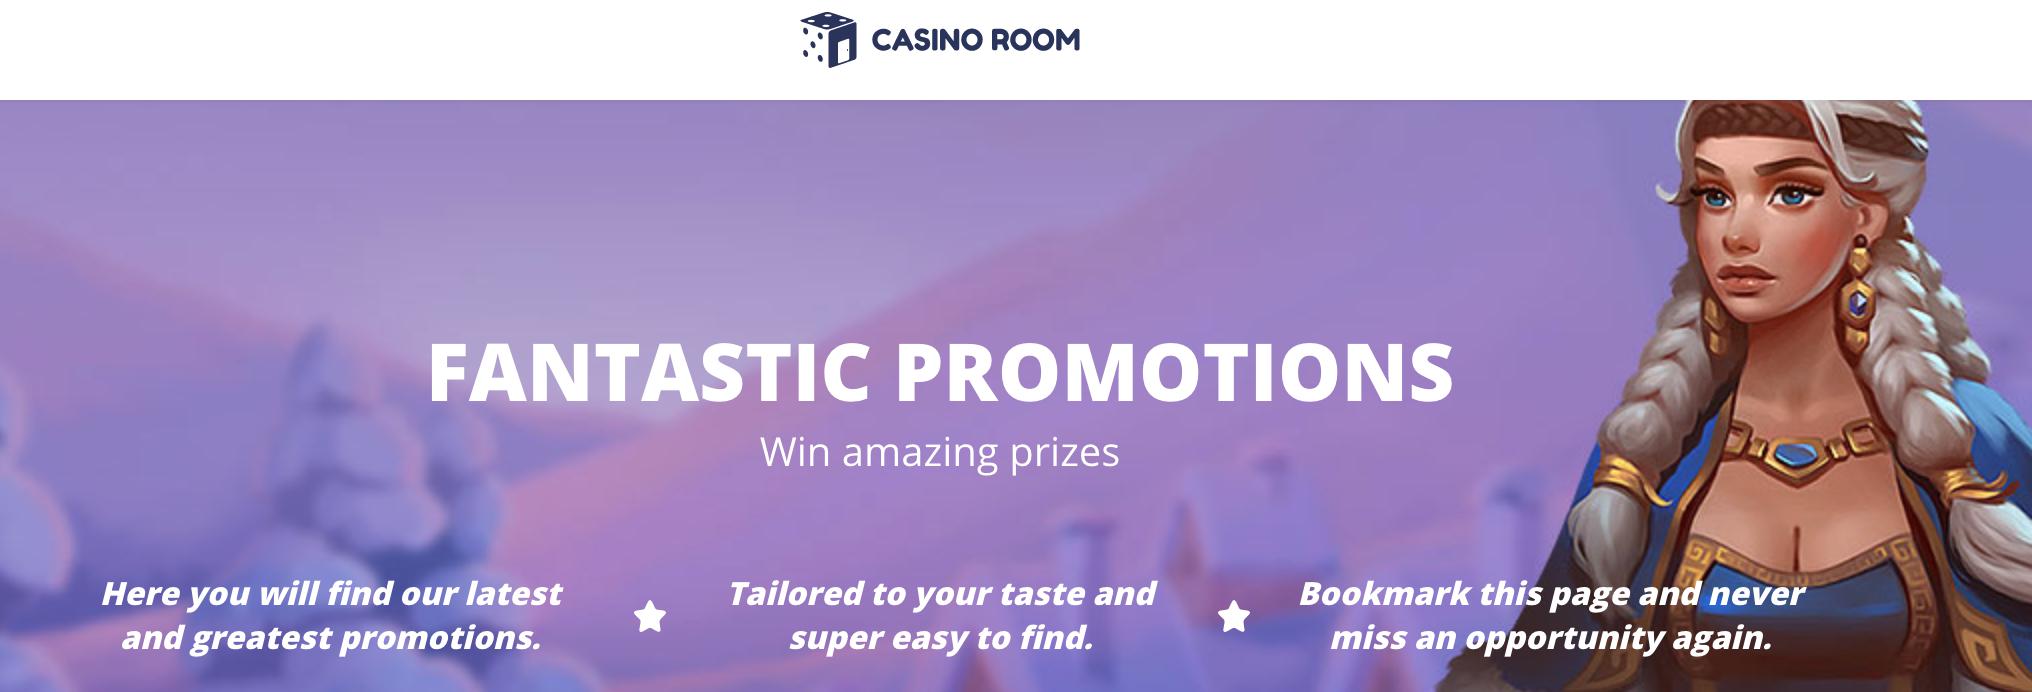 Casino Room games